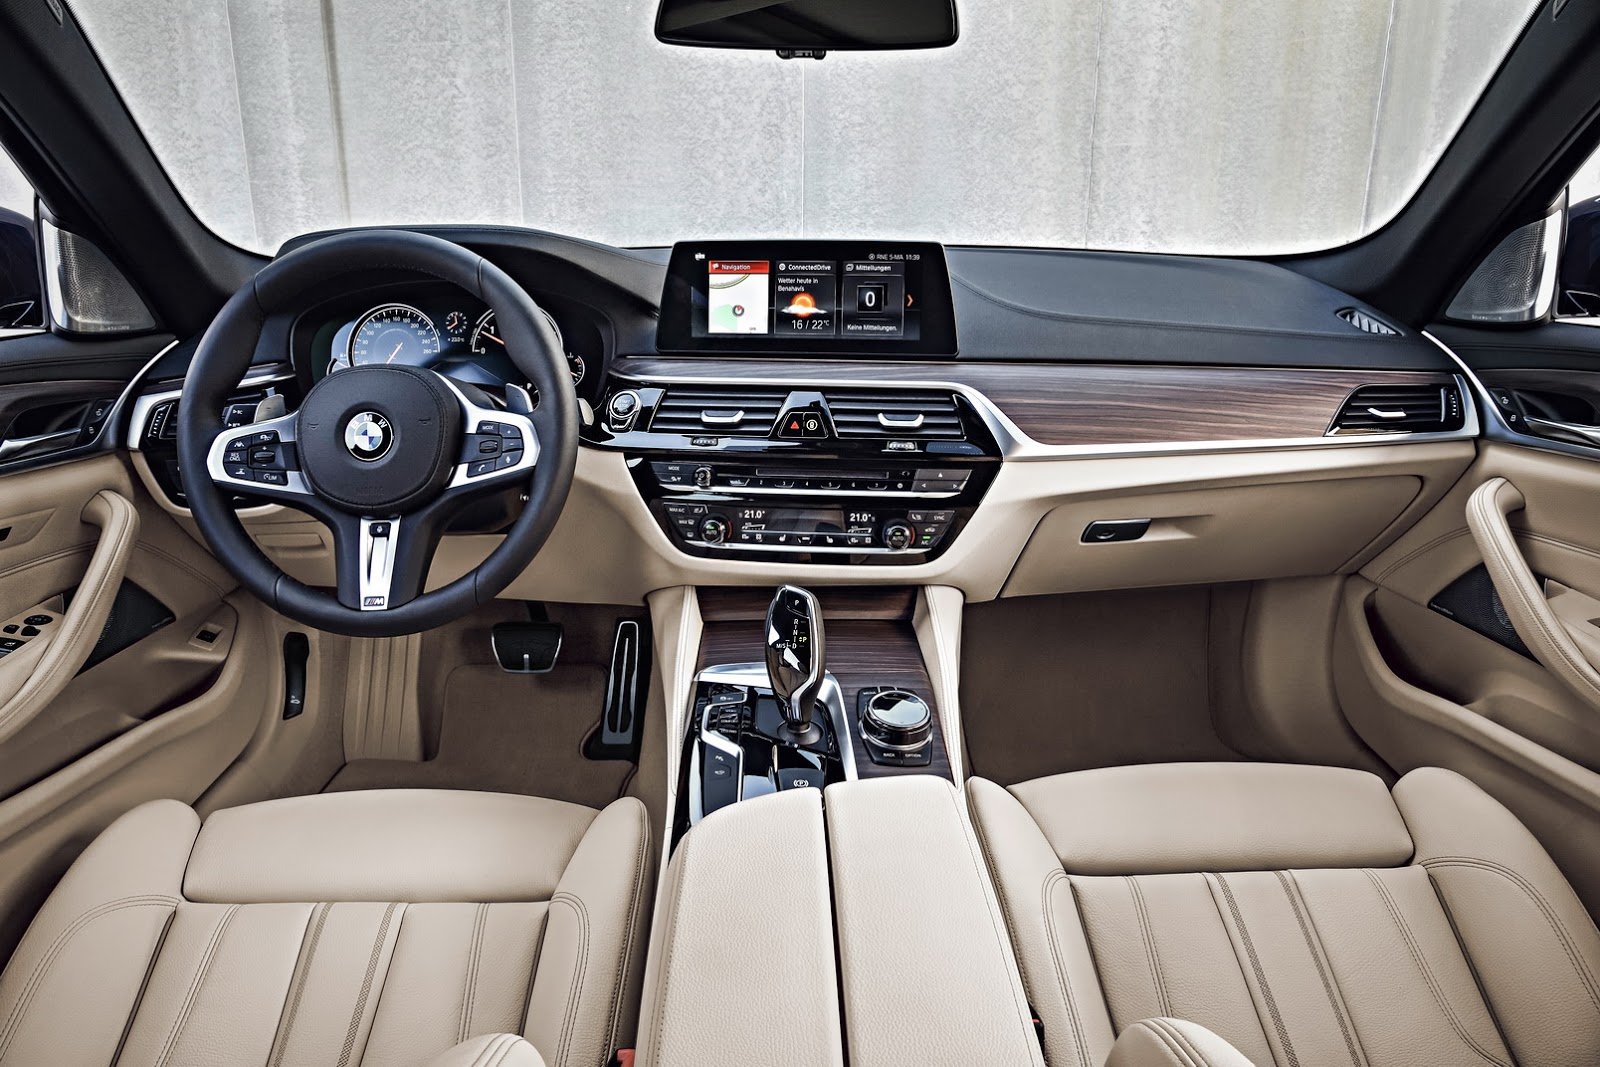 BMW představilo řadu 5 Touring s elegantním designem a velkým kufrem.